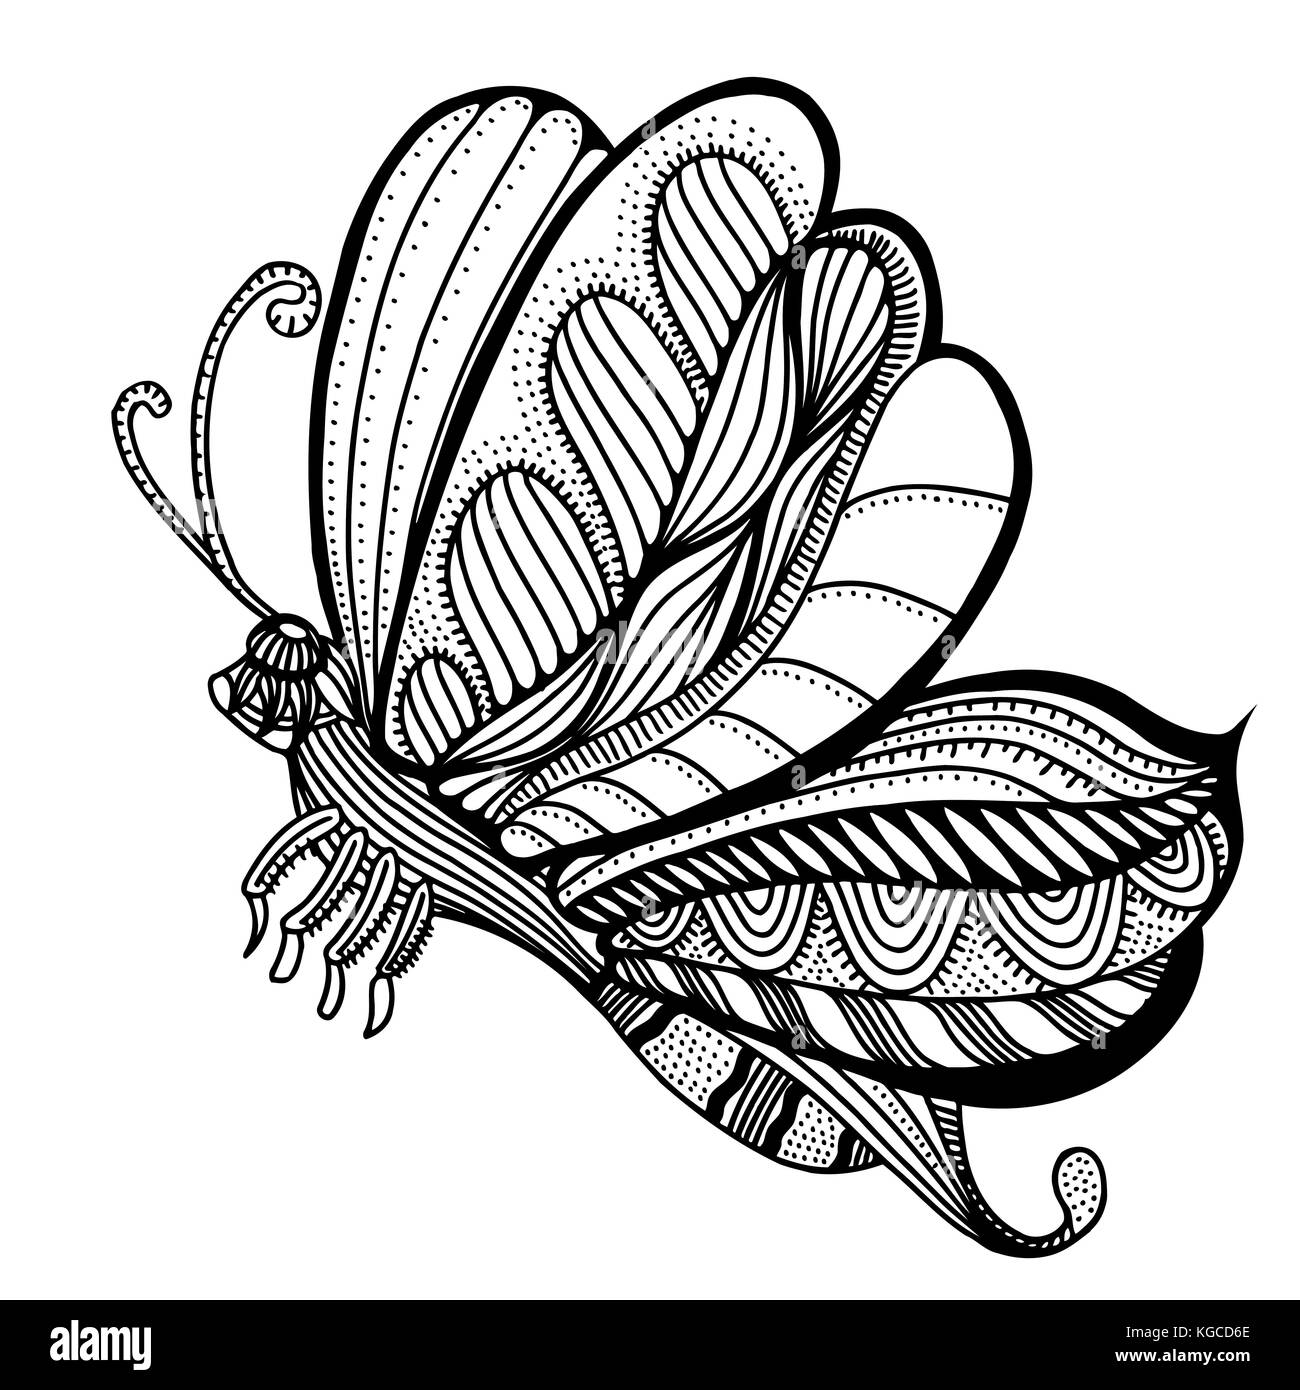 Schmetterling Skizze. Hand gezeichnet Vector Illustration. isoliert auf weißem Stock Vektor